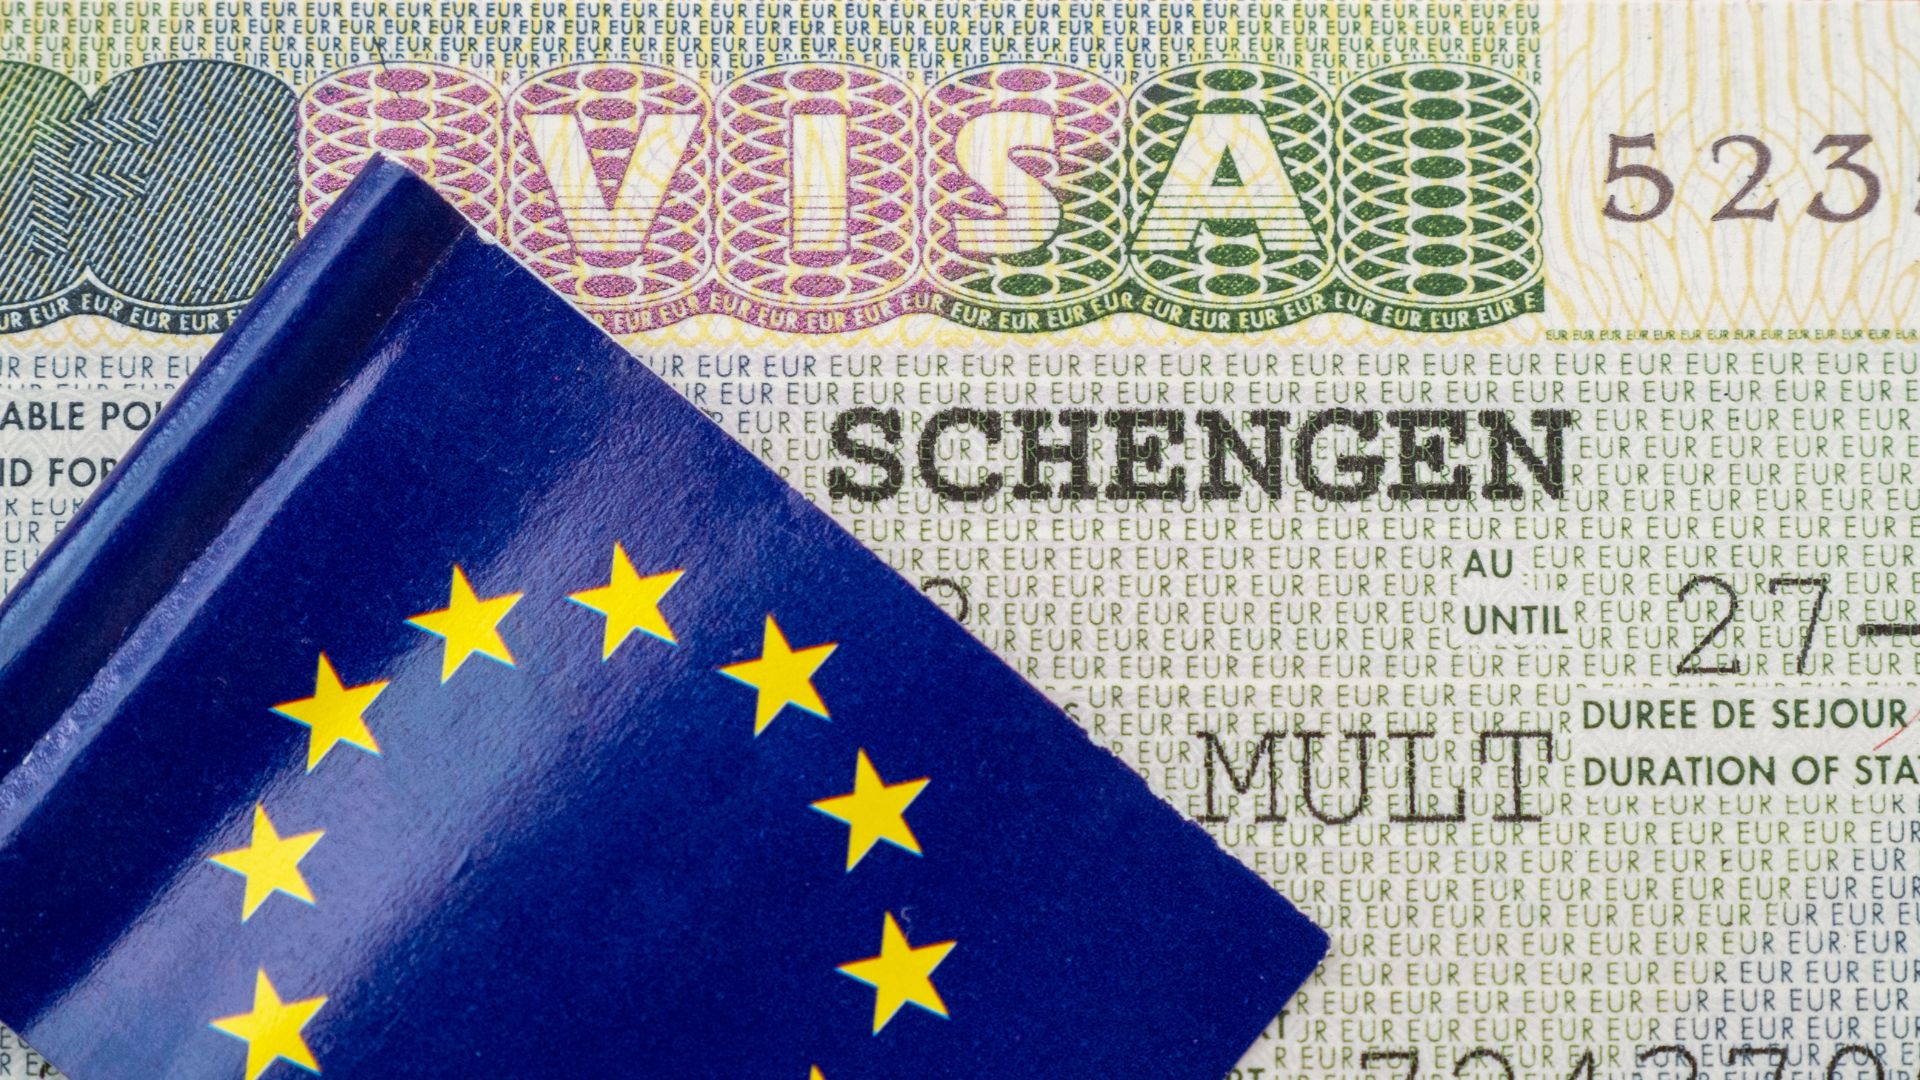 Numérisation des visas dans l’Union européenne, où en est-on ?